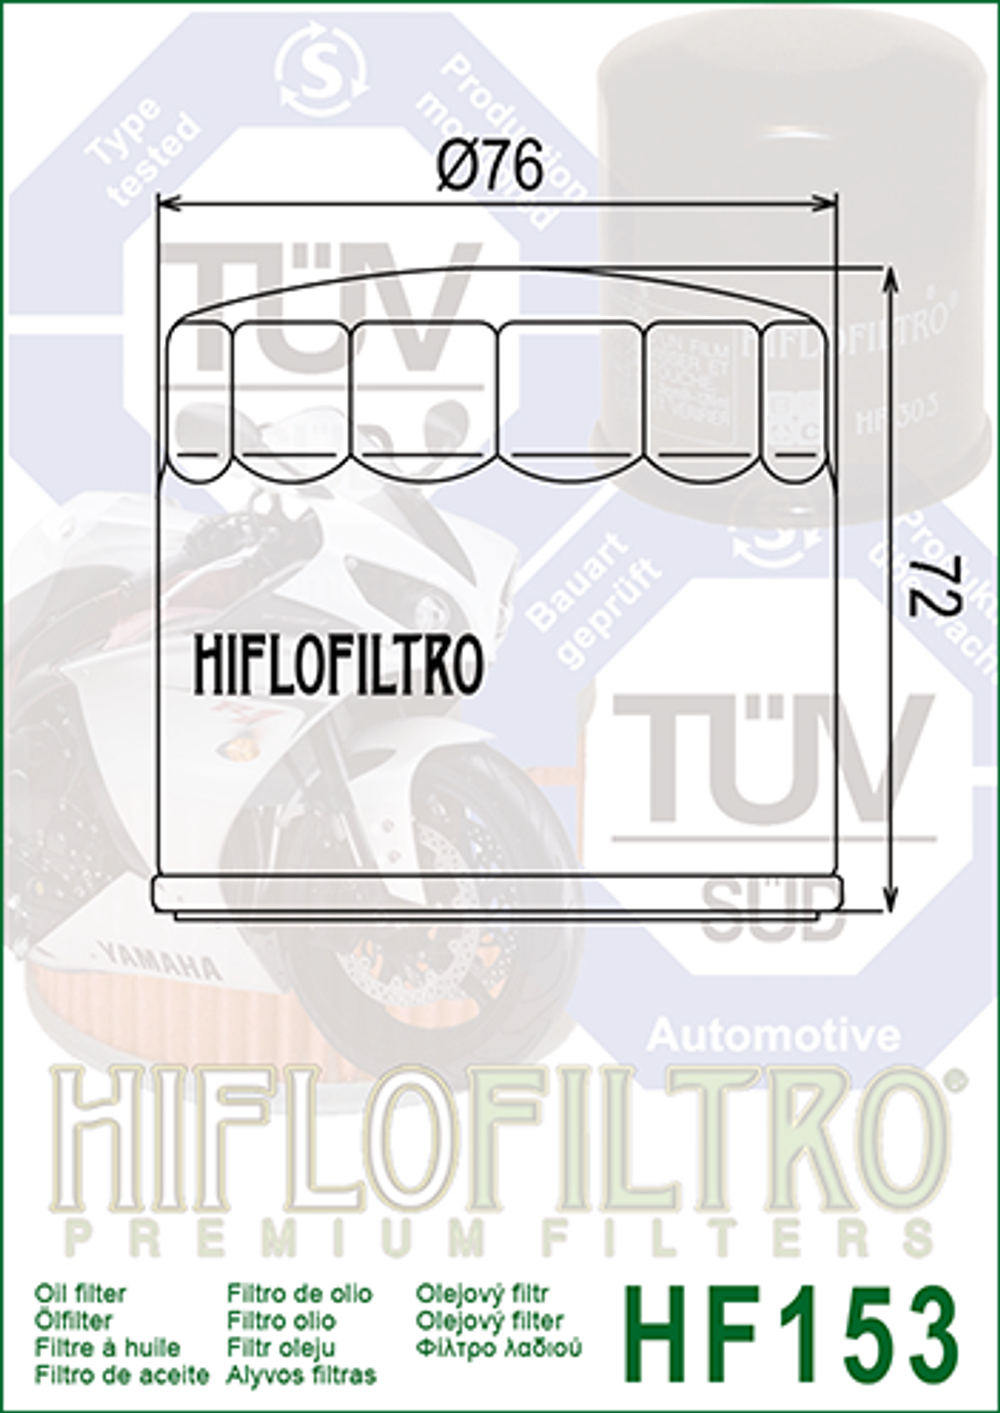 Фильтр масляный HF153 Hiflo